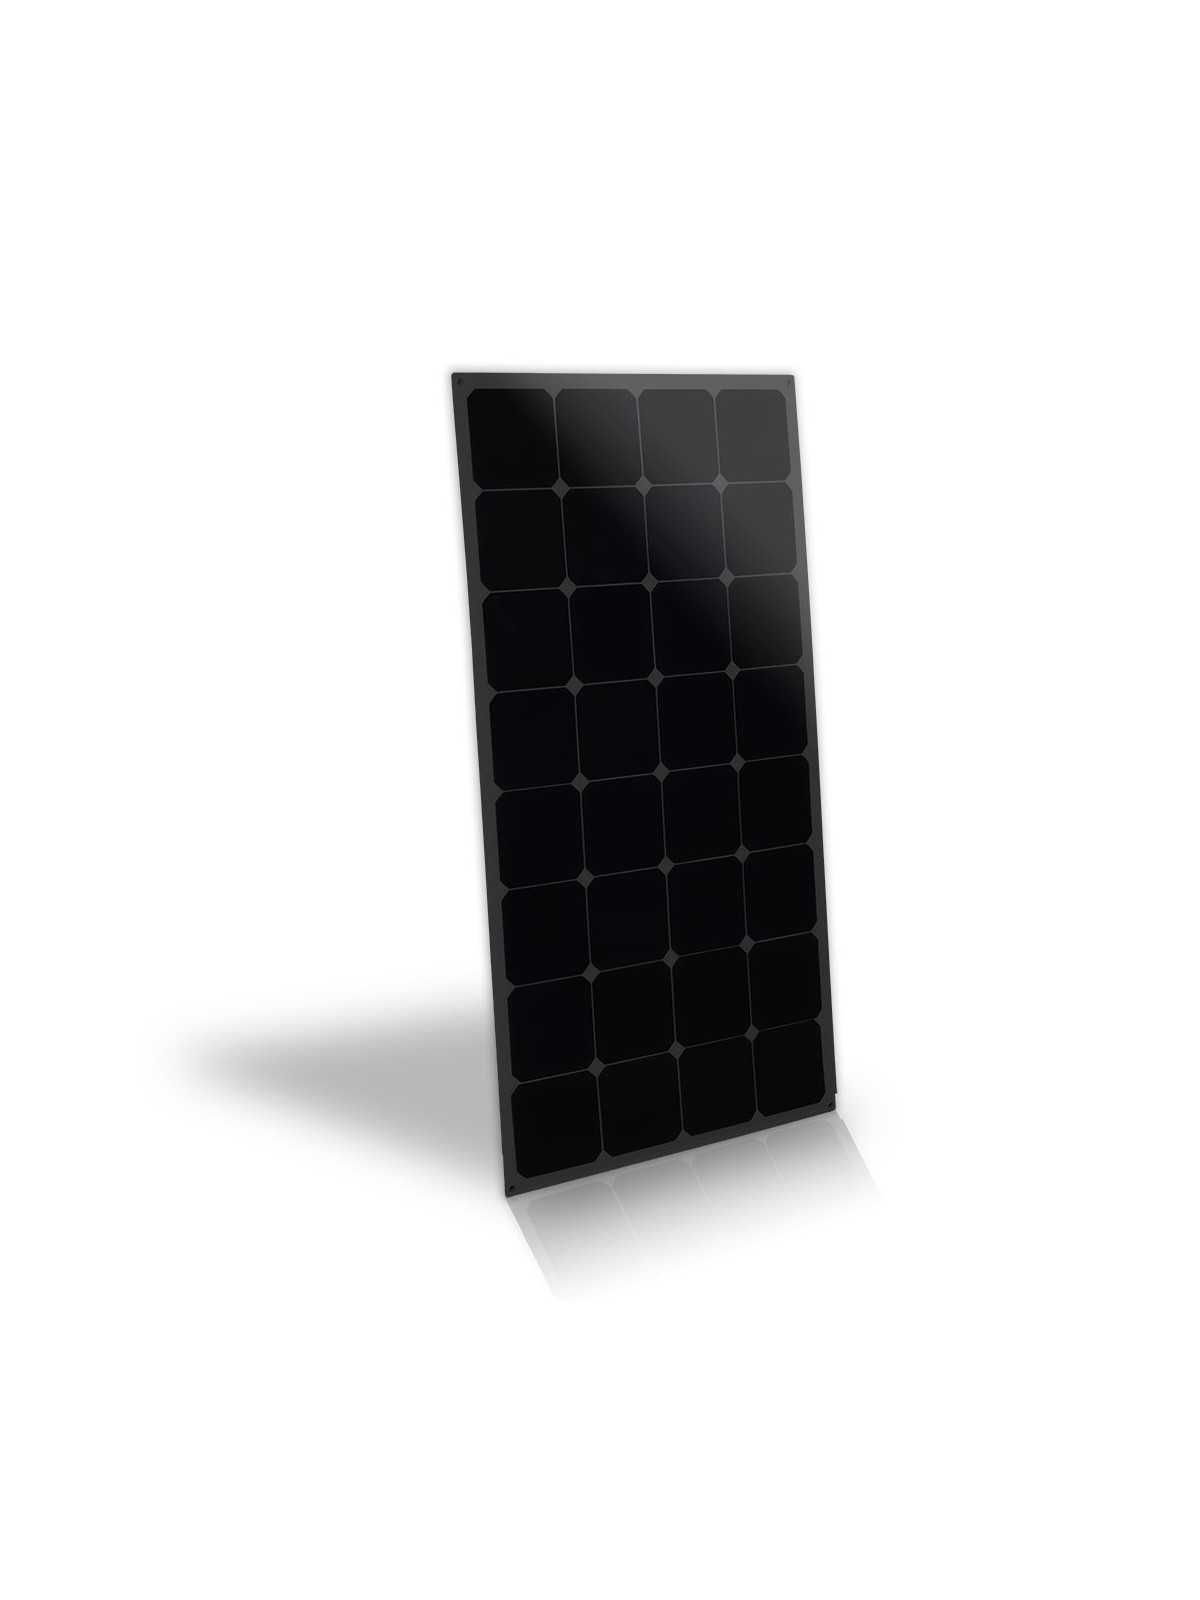 MX FLEX Full Negro 12V panel solar flexible 100Wp